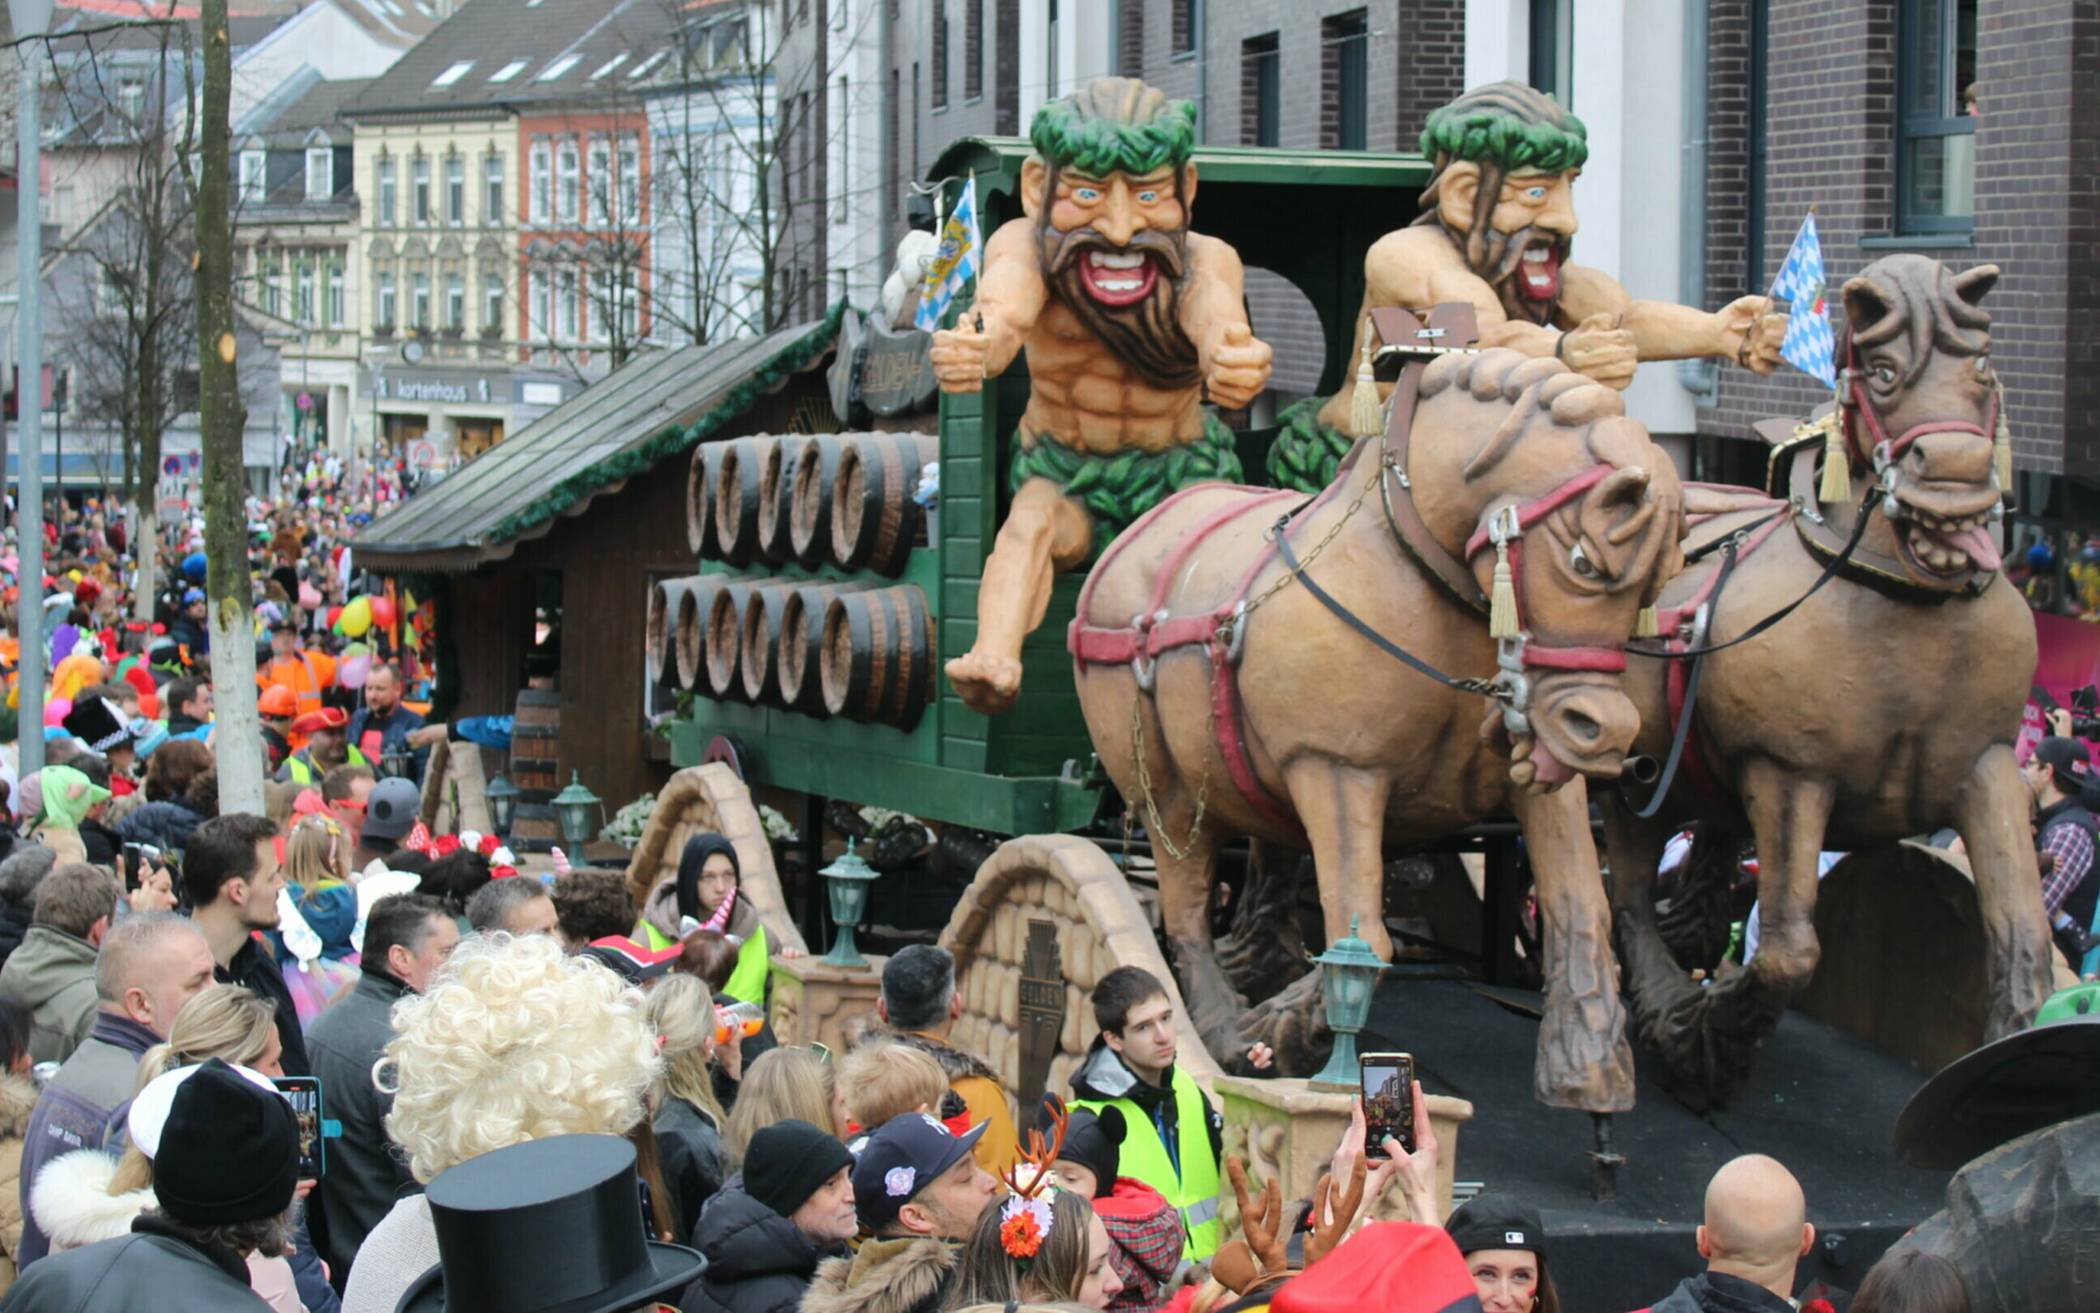  Tausende Menschen säumten die Straßen, um den Karnevalszug in Mettmann zu erleben. 